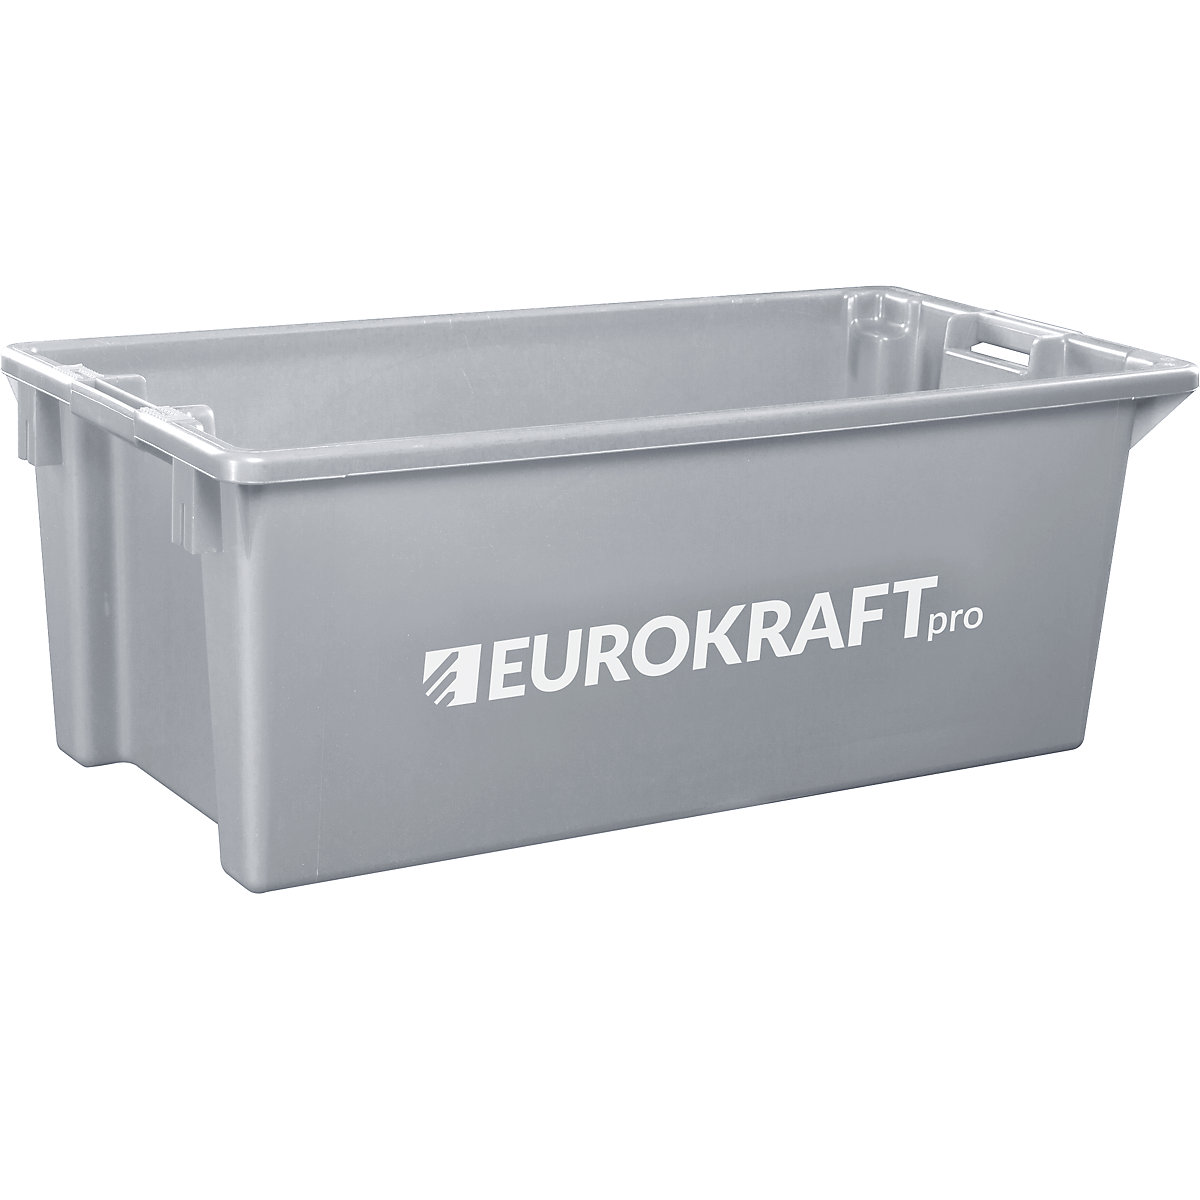 EUROKRAFTpro – Spremnik za slaganje od polipropilena pogodnog za kontakt s prehrambenim proizvodima, volumen 13 l, pak. 4 kom., zatvorene stijenke i dno, u sivoj boji